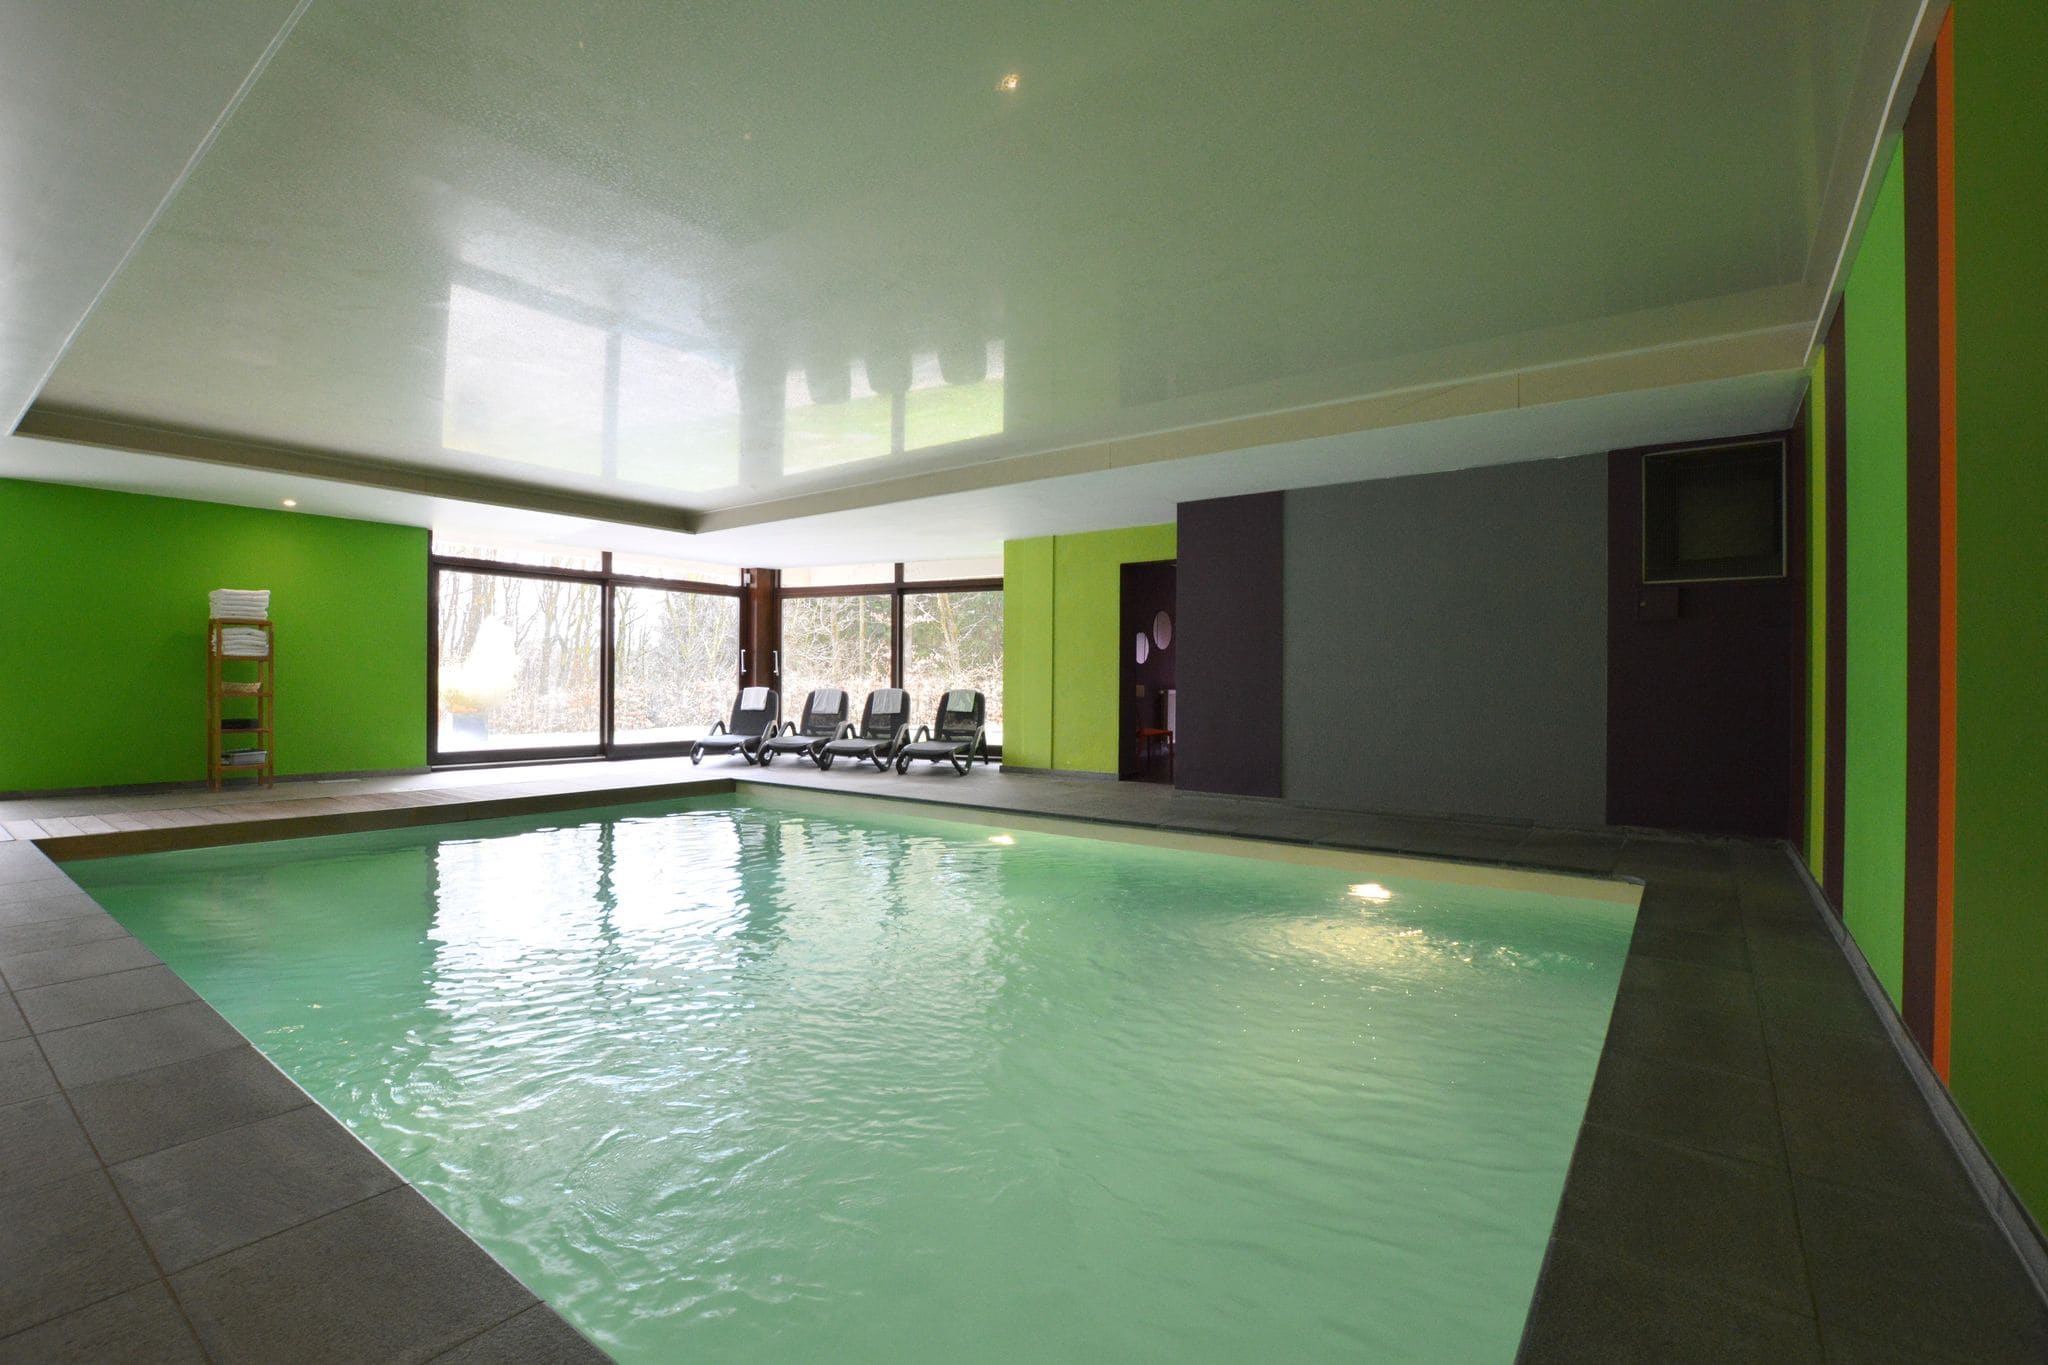 Grote, luxe vakantievilla met binnenzwembad, sauna en fitnessapparatuur